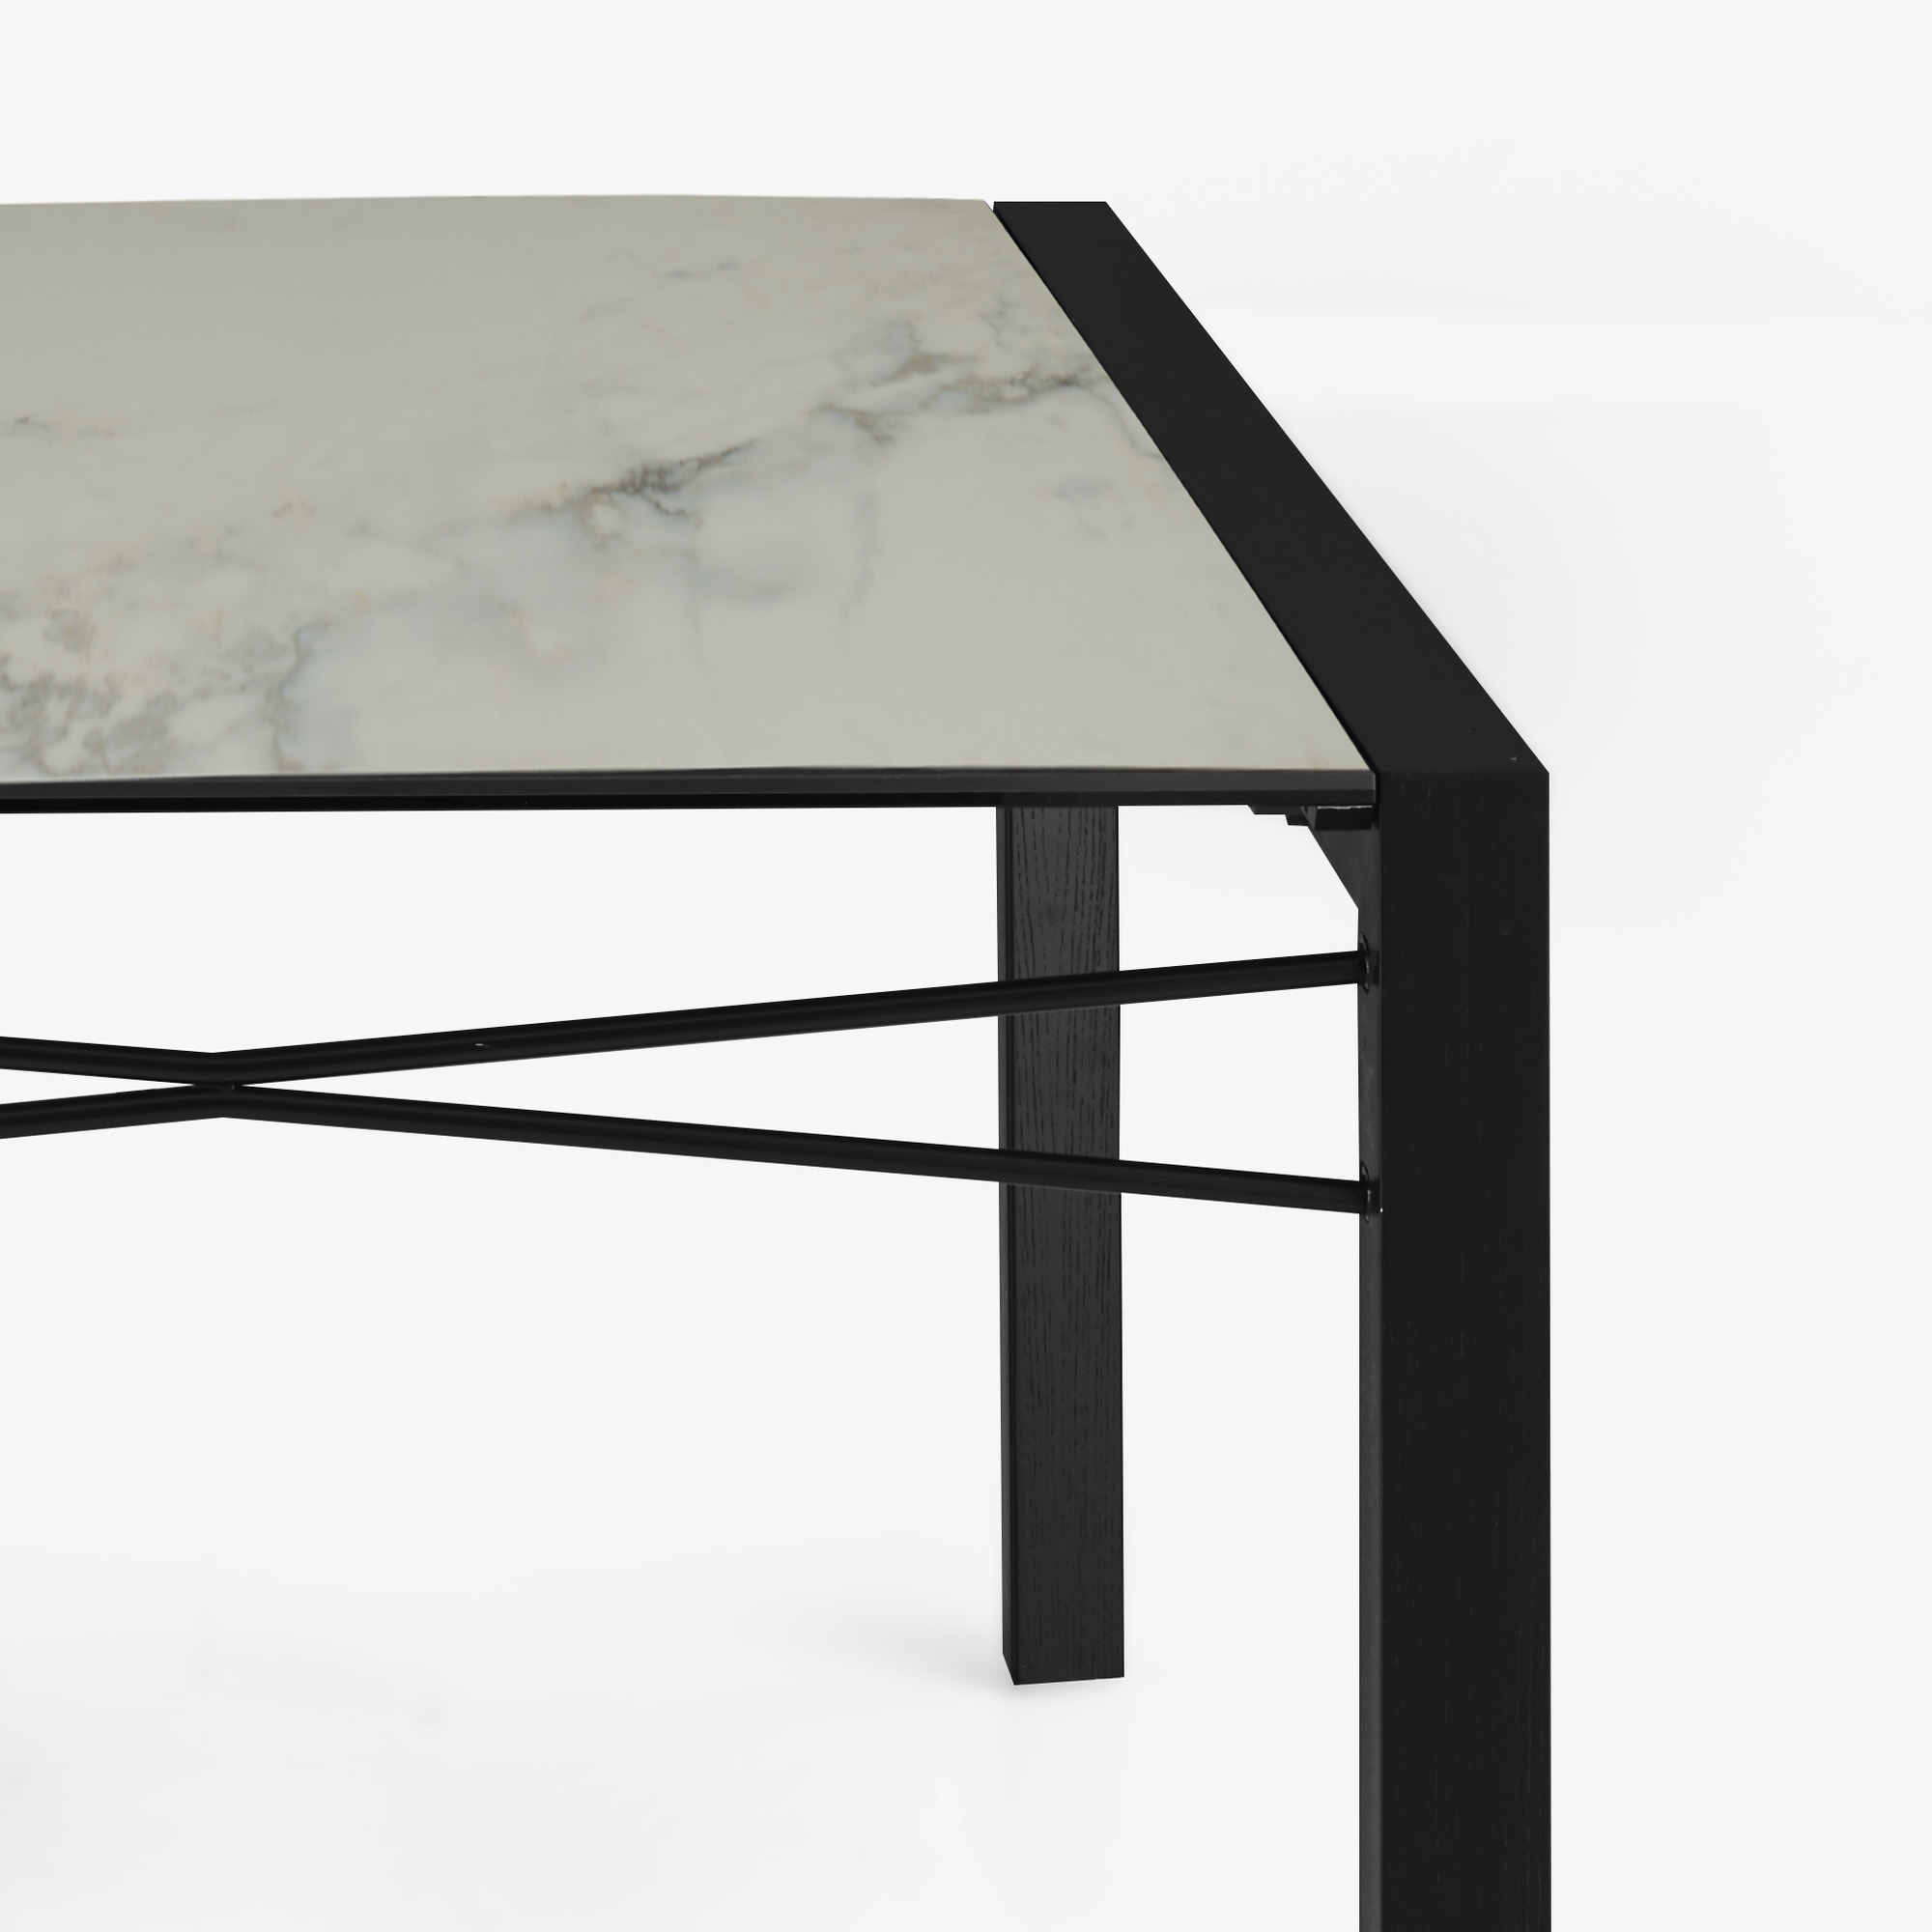 Image 餐桌 桌面由白色大理石效果的太空瓷制成 黑色白蜡木底座 6